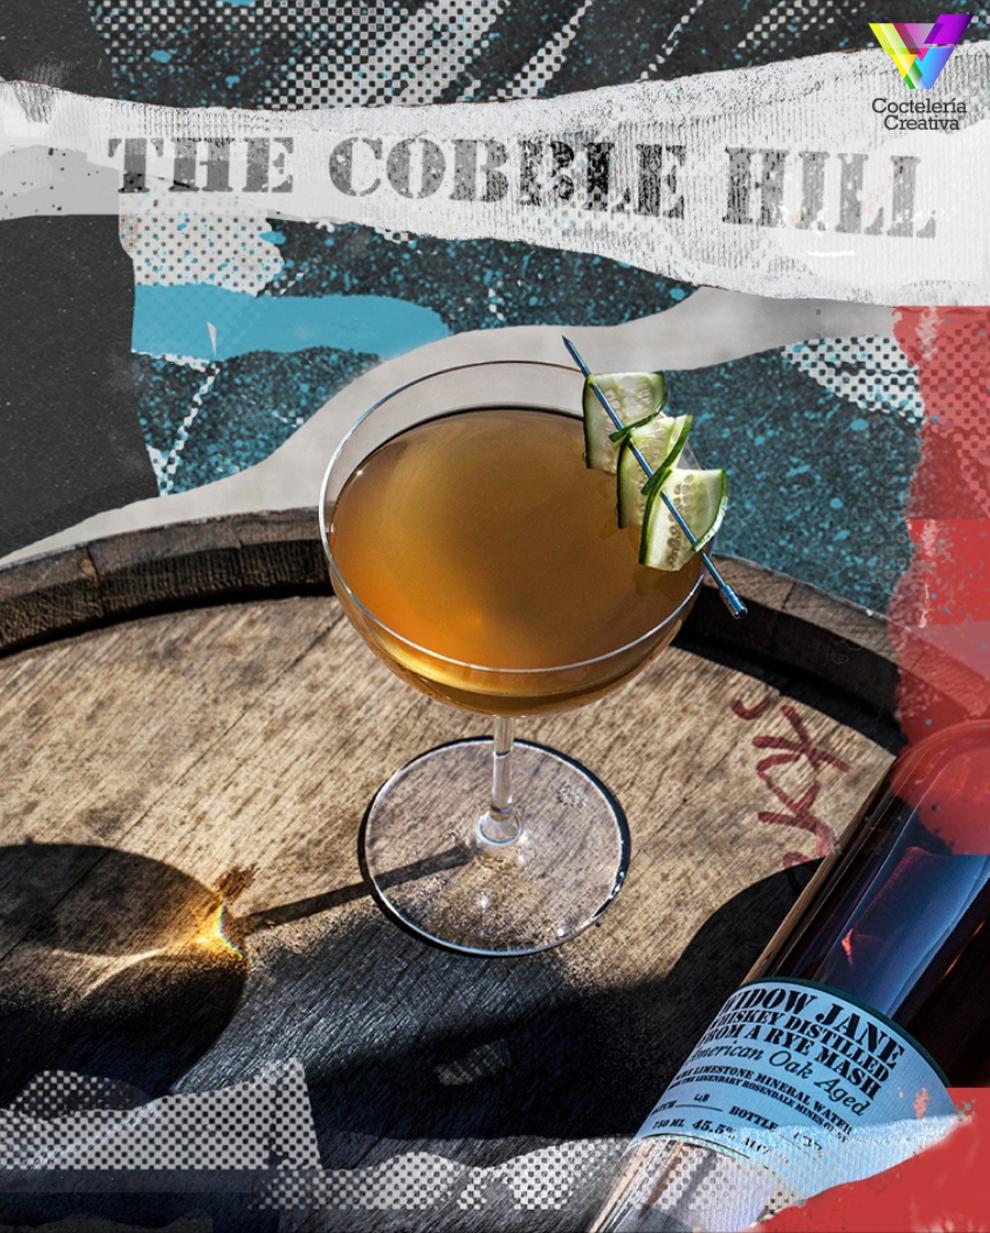 imagen cóctel The cobble hill con botella de Widow Jane American Oak Aged Rye